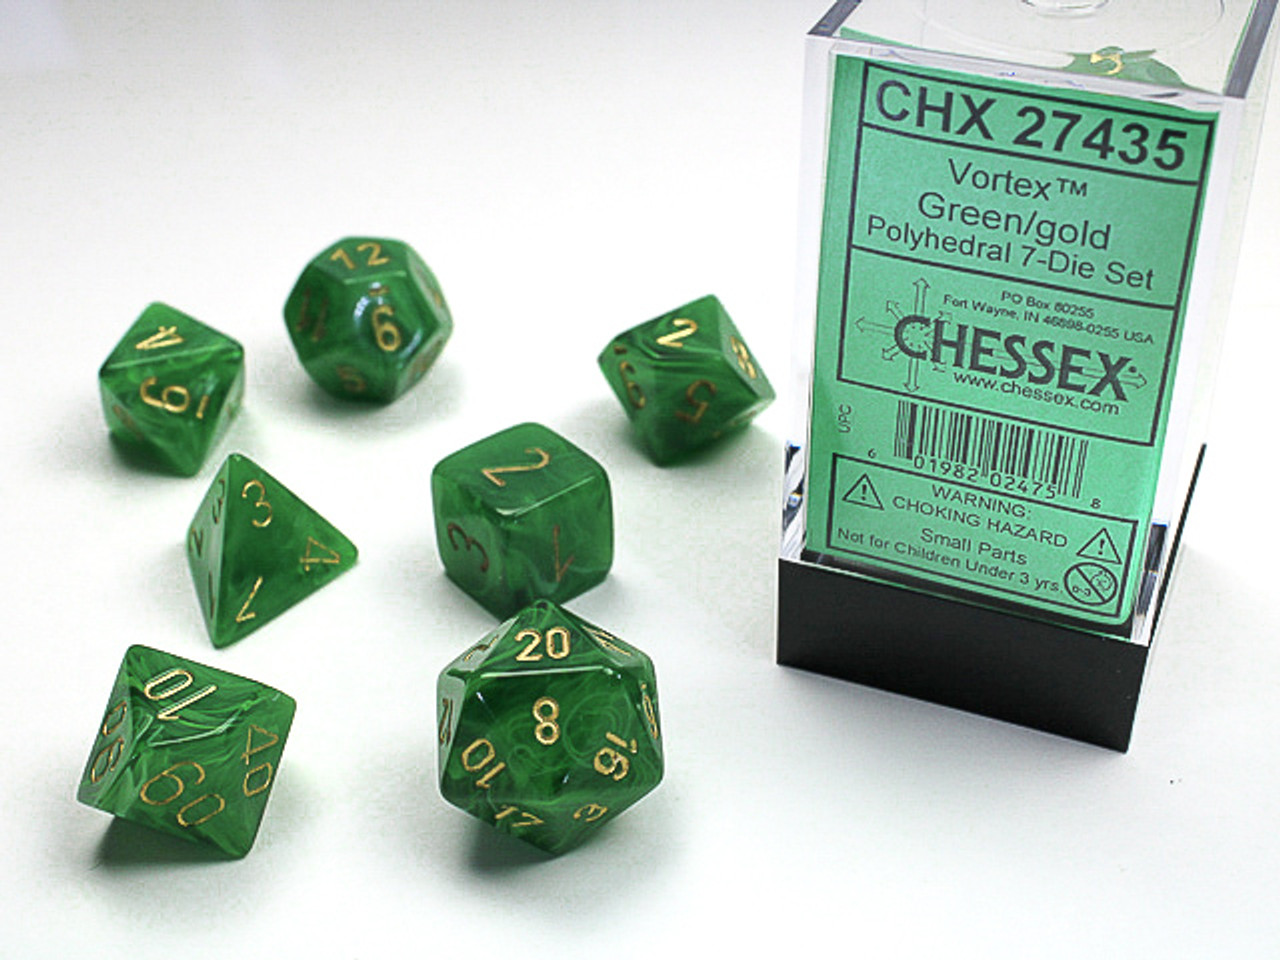 27435 - Vortex® Polyhedral Green/gold 7-Die Set